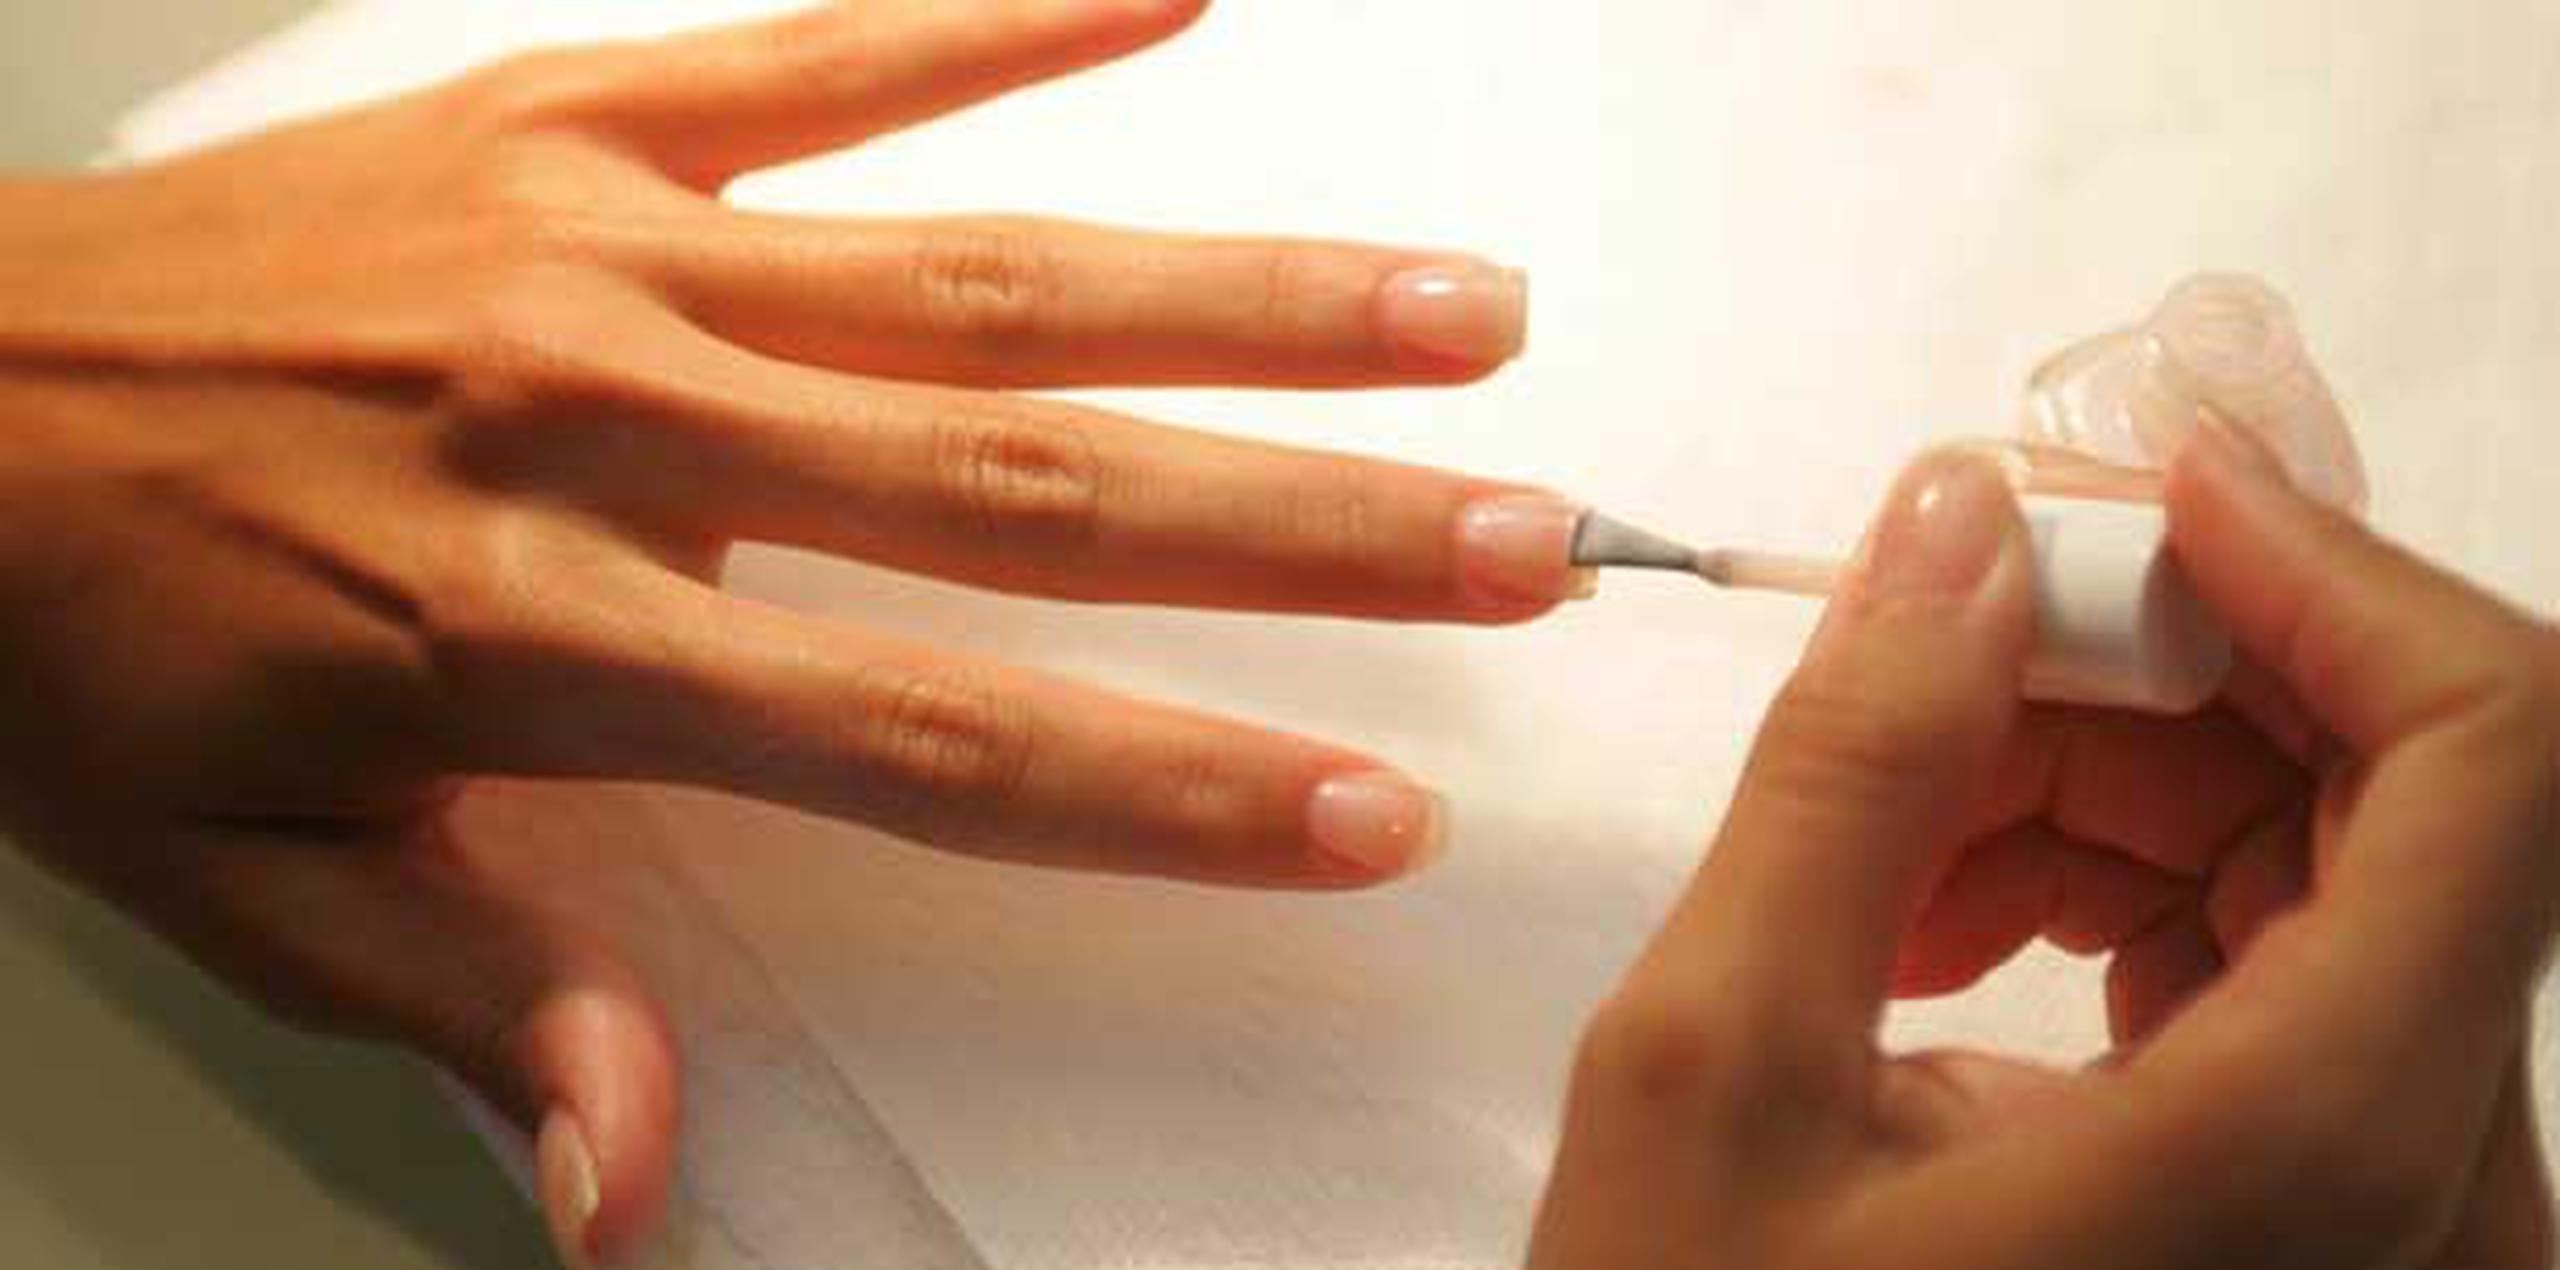 Aplica una capa finita de vaselina en la piel alrededor de tus uñas de manera que si la brocha se sale, el color no se te pegará a la piel. (Archivo)